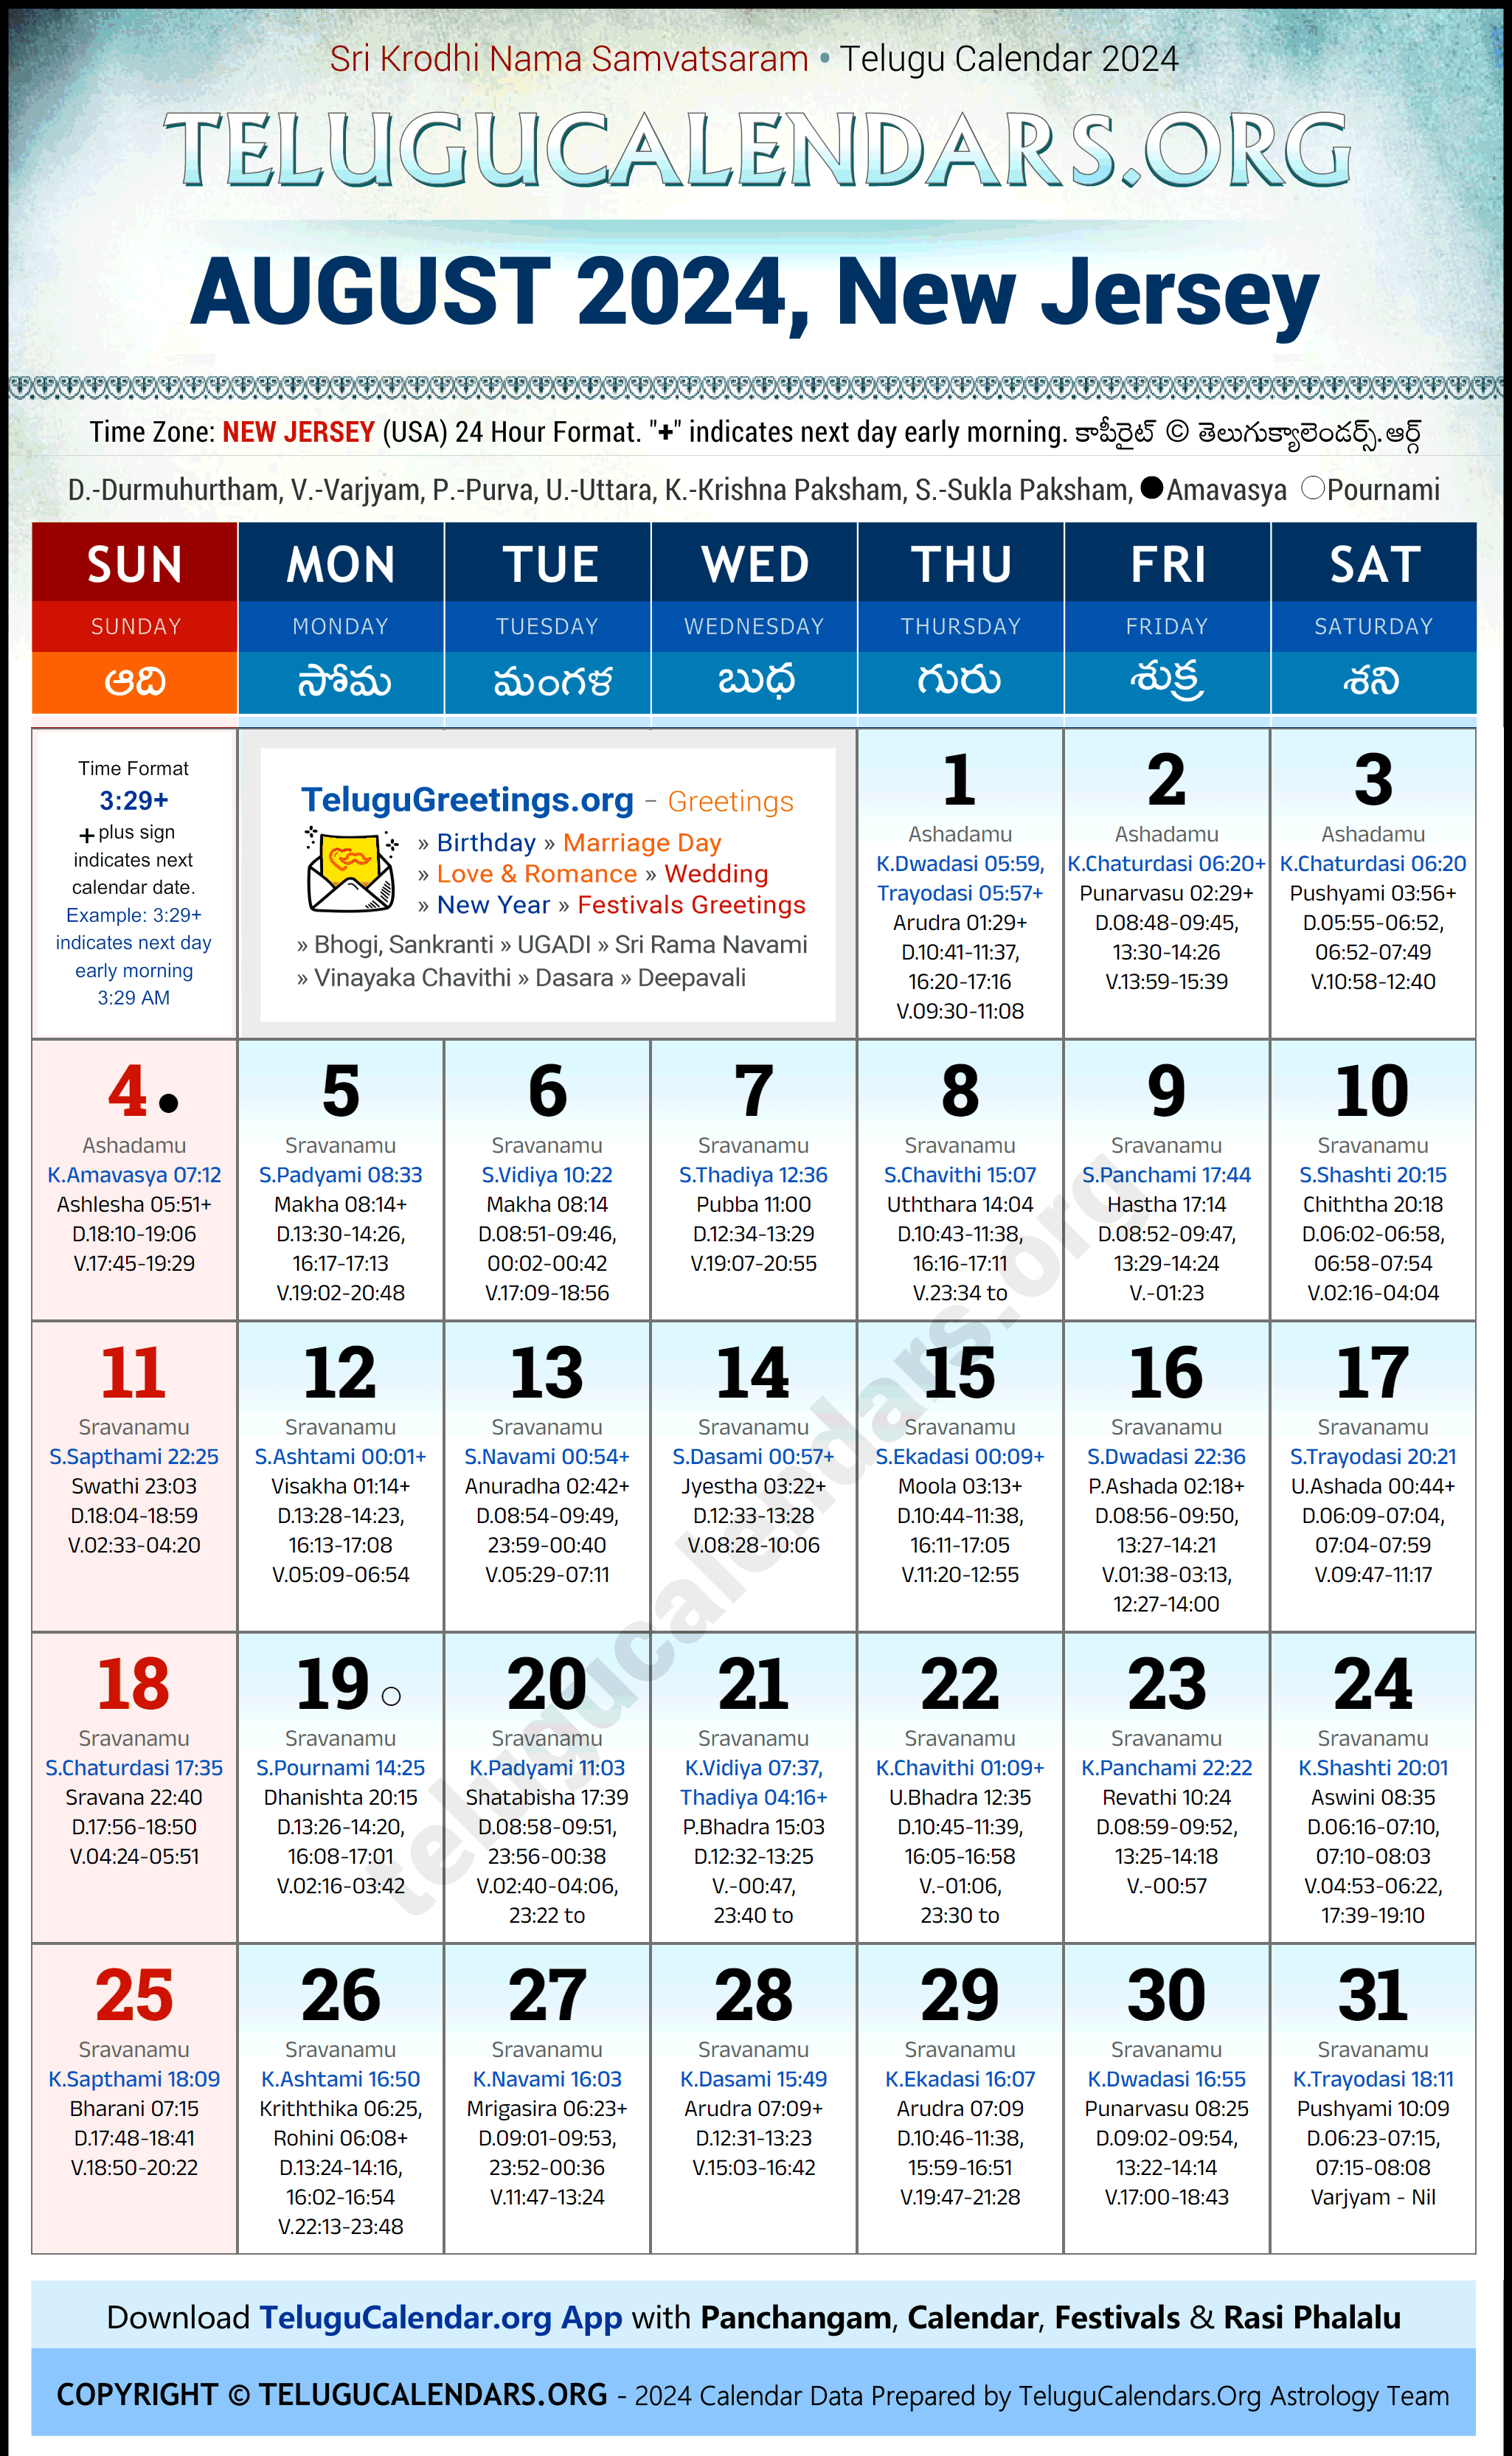 Telugu Calendar 2024 August Festivals for New Jersey